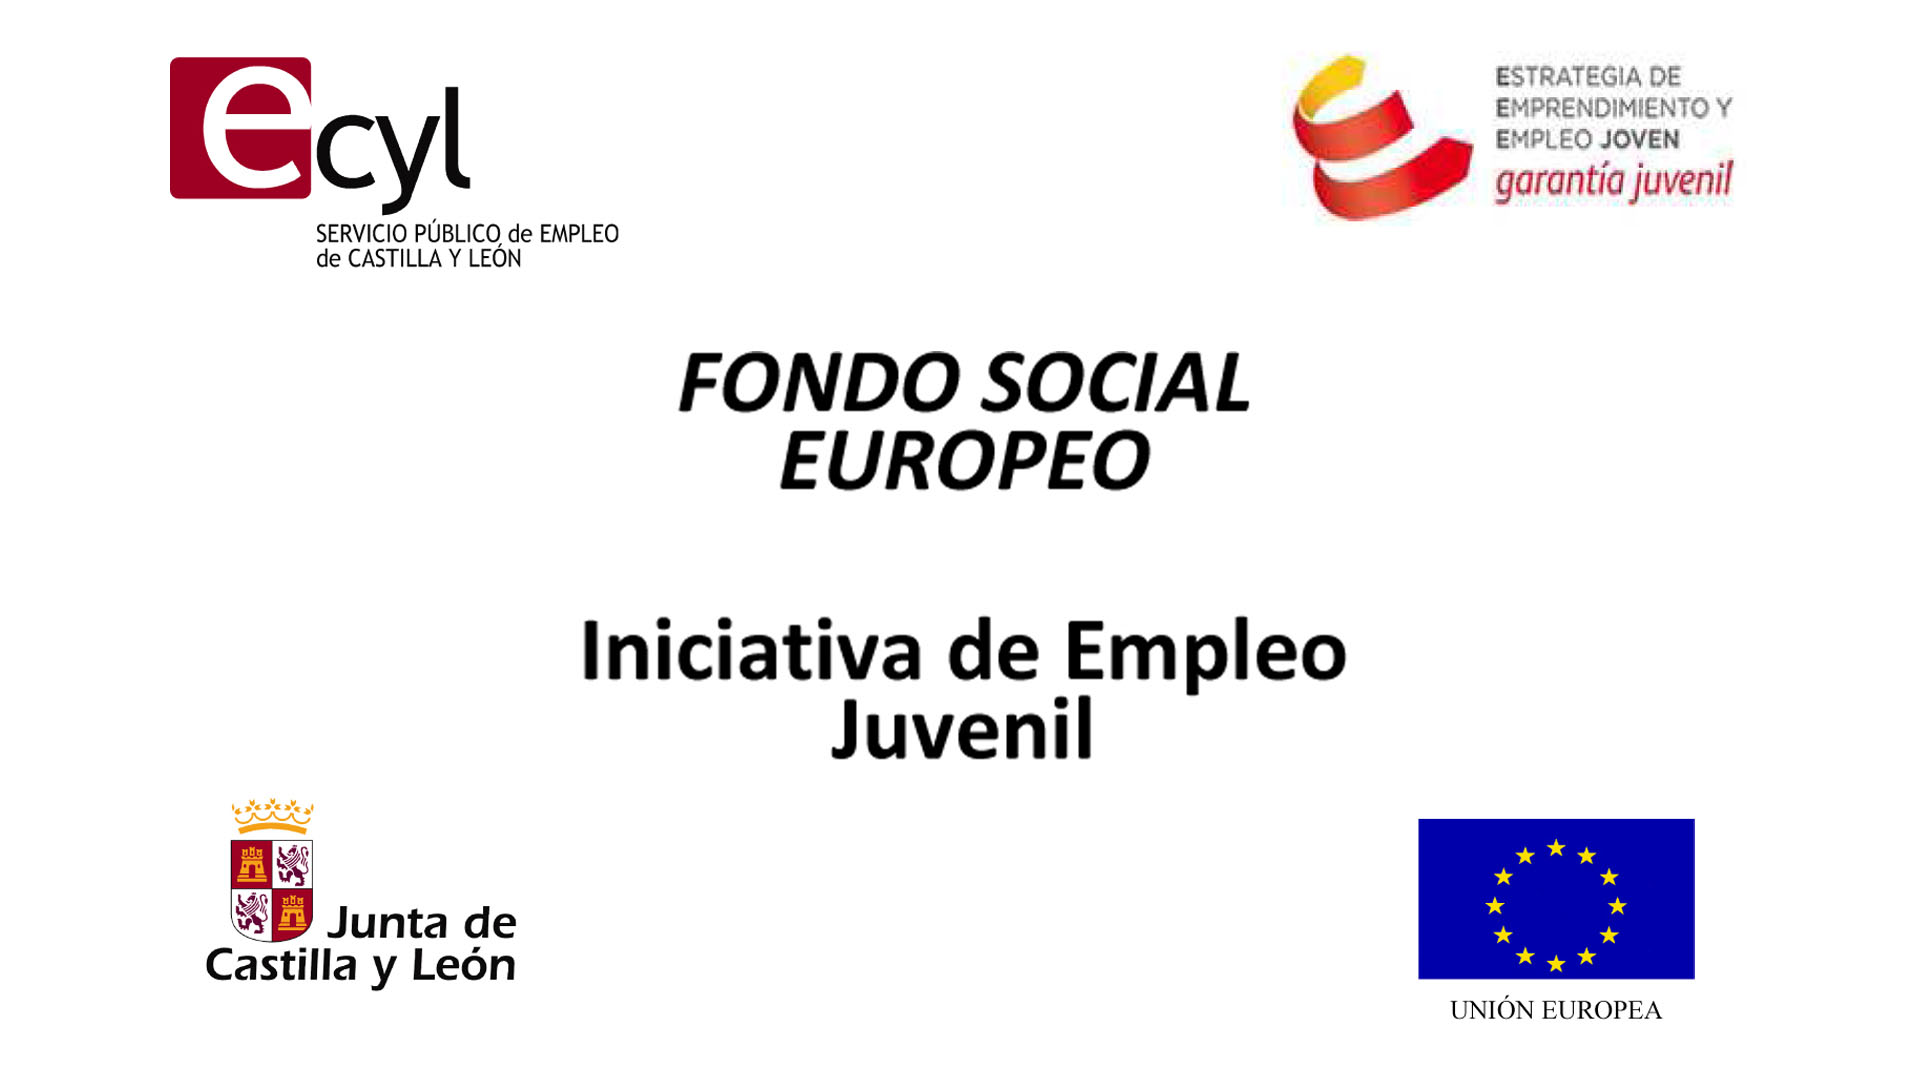 Fondo Social Europeo y ECYL conceden una subvención a Autismo Burgos para contratar a 4 jóvenes